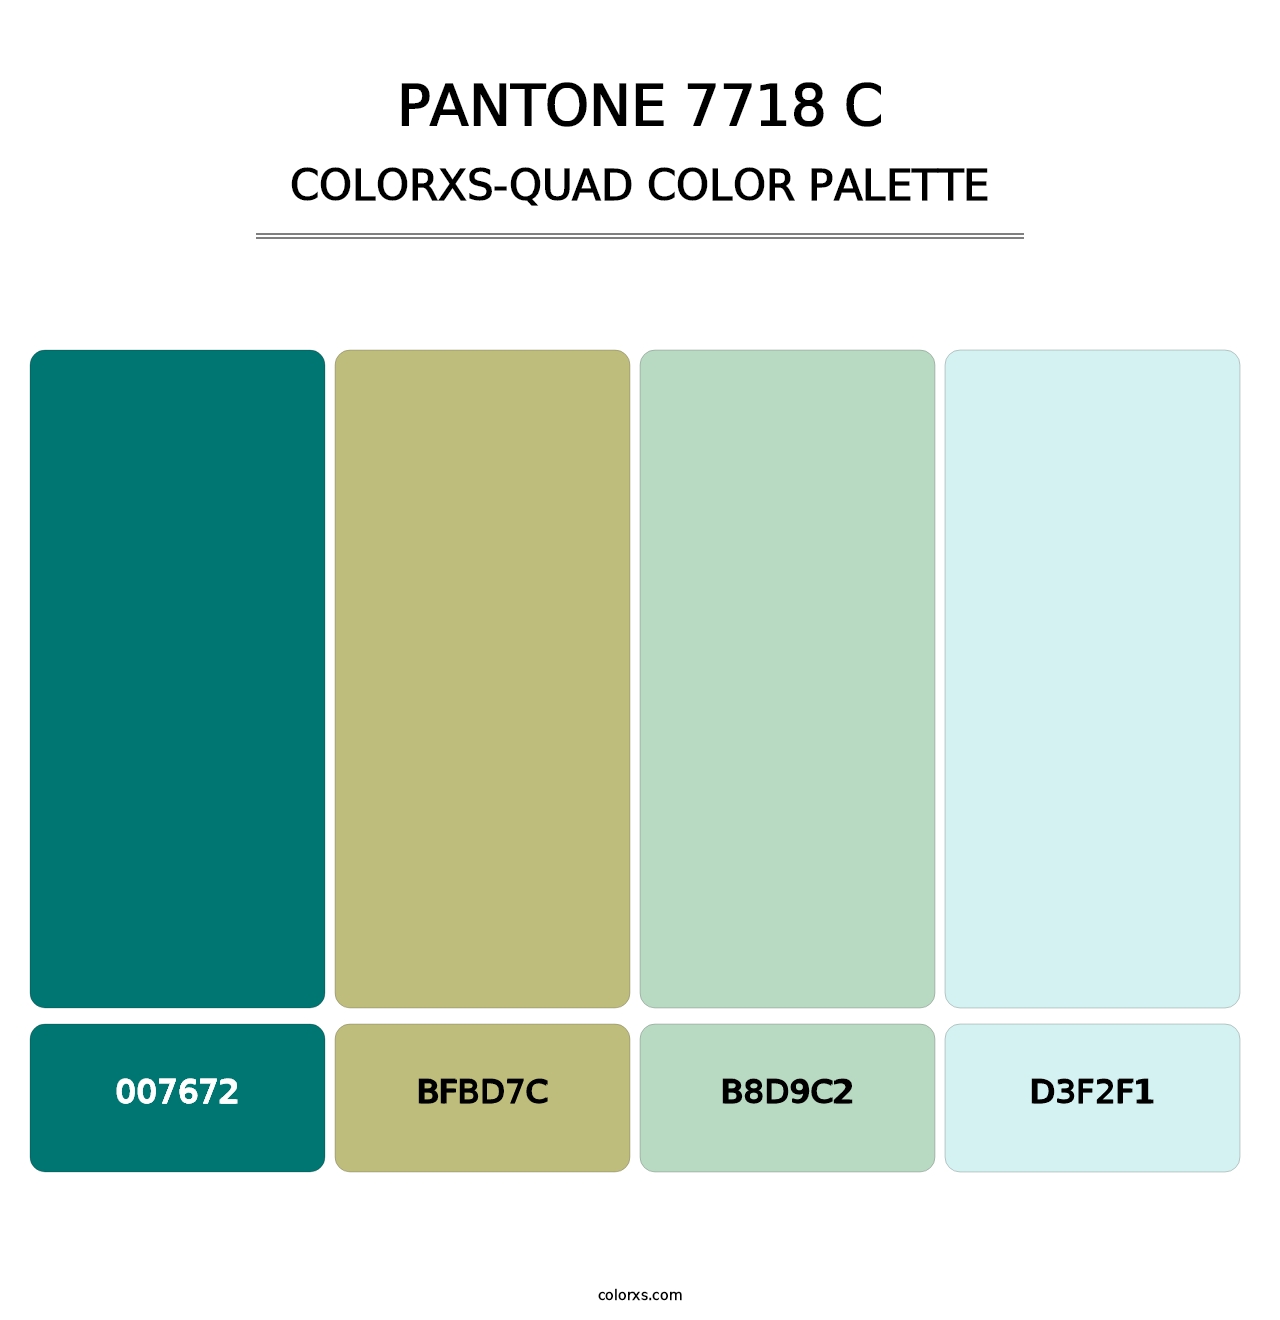 PANTONE 7718 C - Colorxs Quad Palette